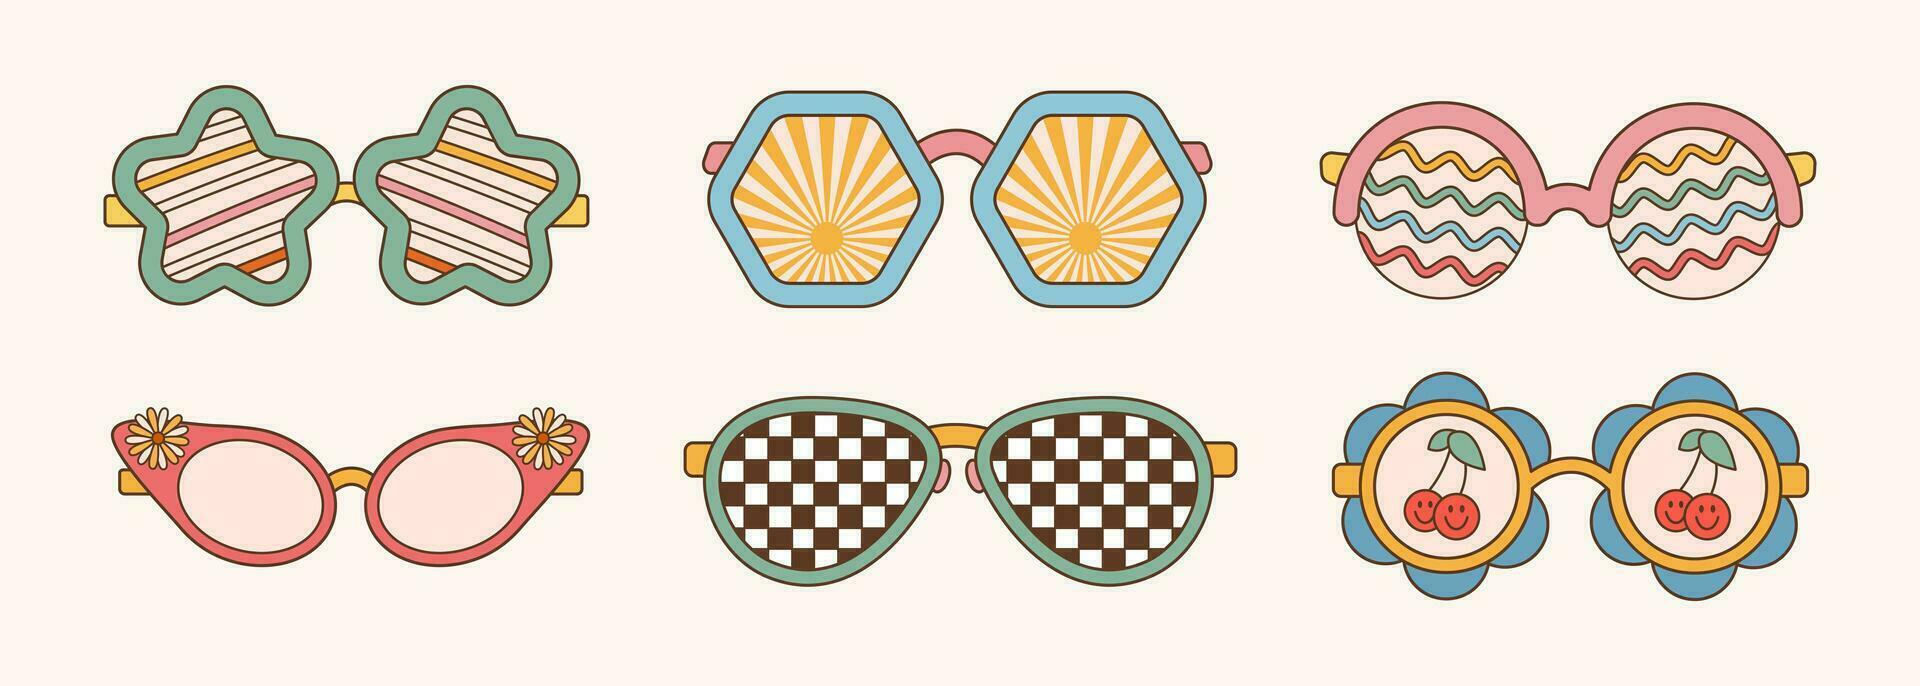 occhiali da sole impostato nel retrò Groovy hippie stile. diverso le forme stelle, fiori. vettore illustrazione 70s anni 80